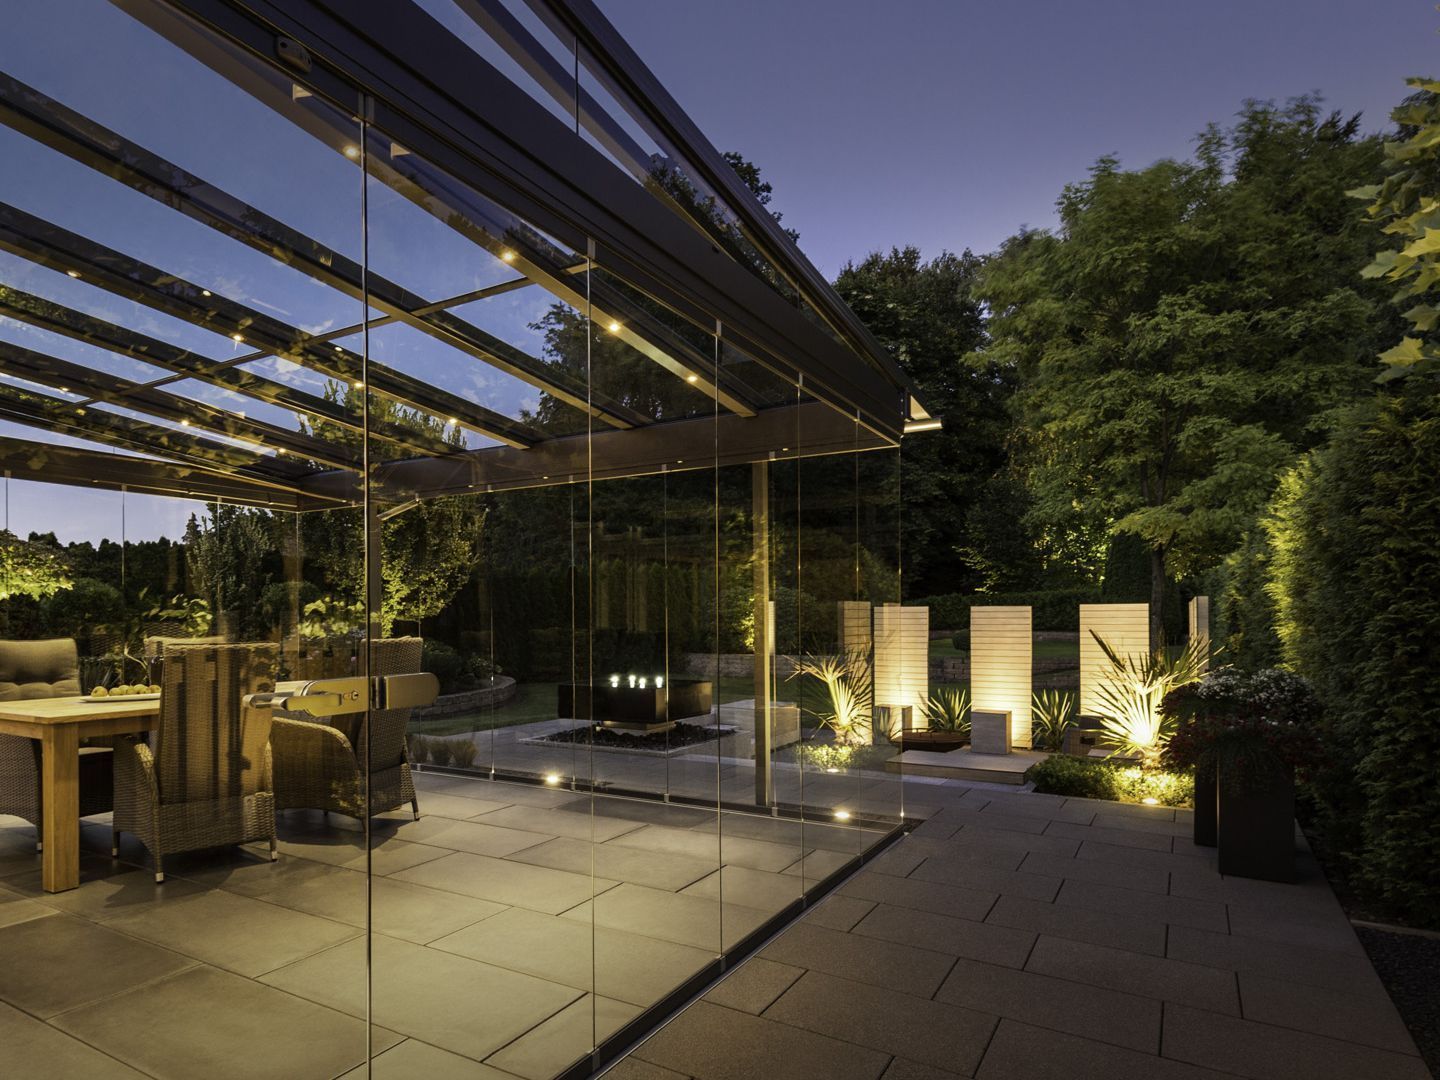 Auch geschlossen bieten die verschiebbaren Verglasungen einen rundum tollen Ausblick in den Garten.Bildnachweis: Solarlux GmbH